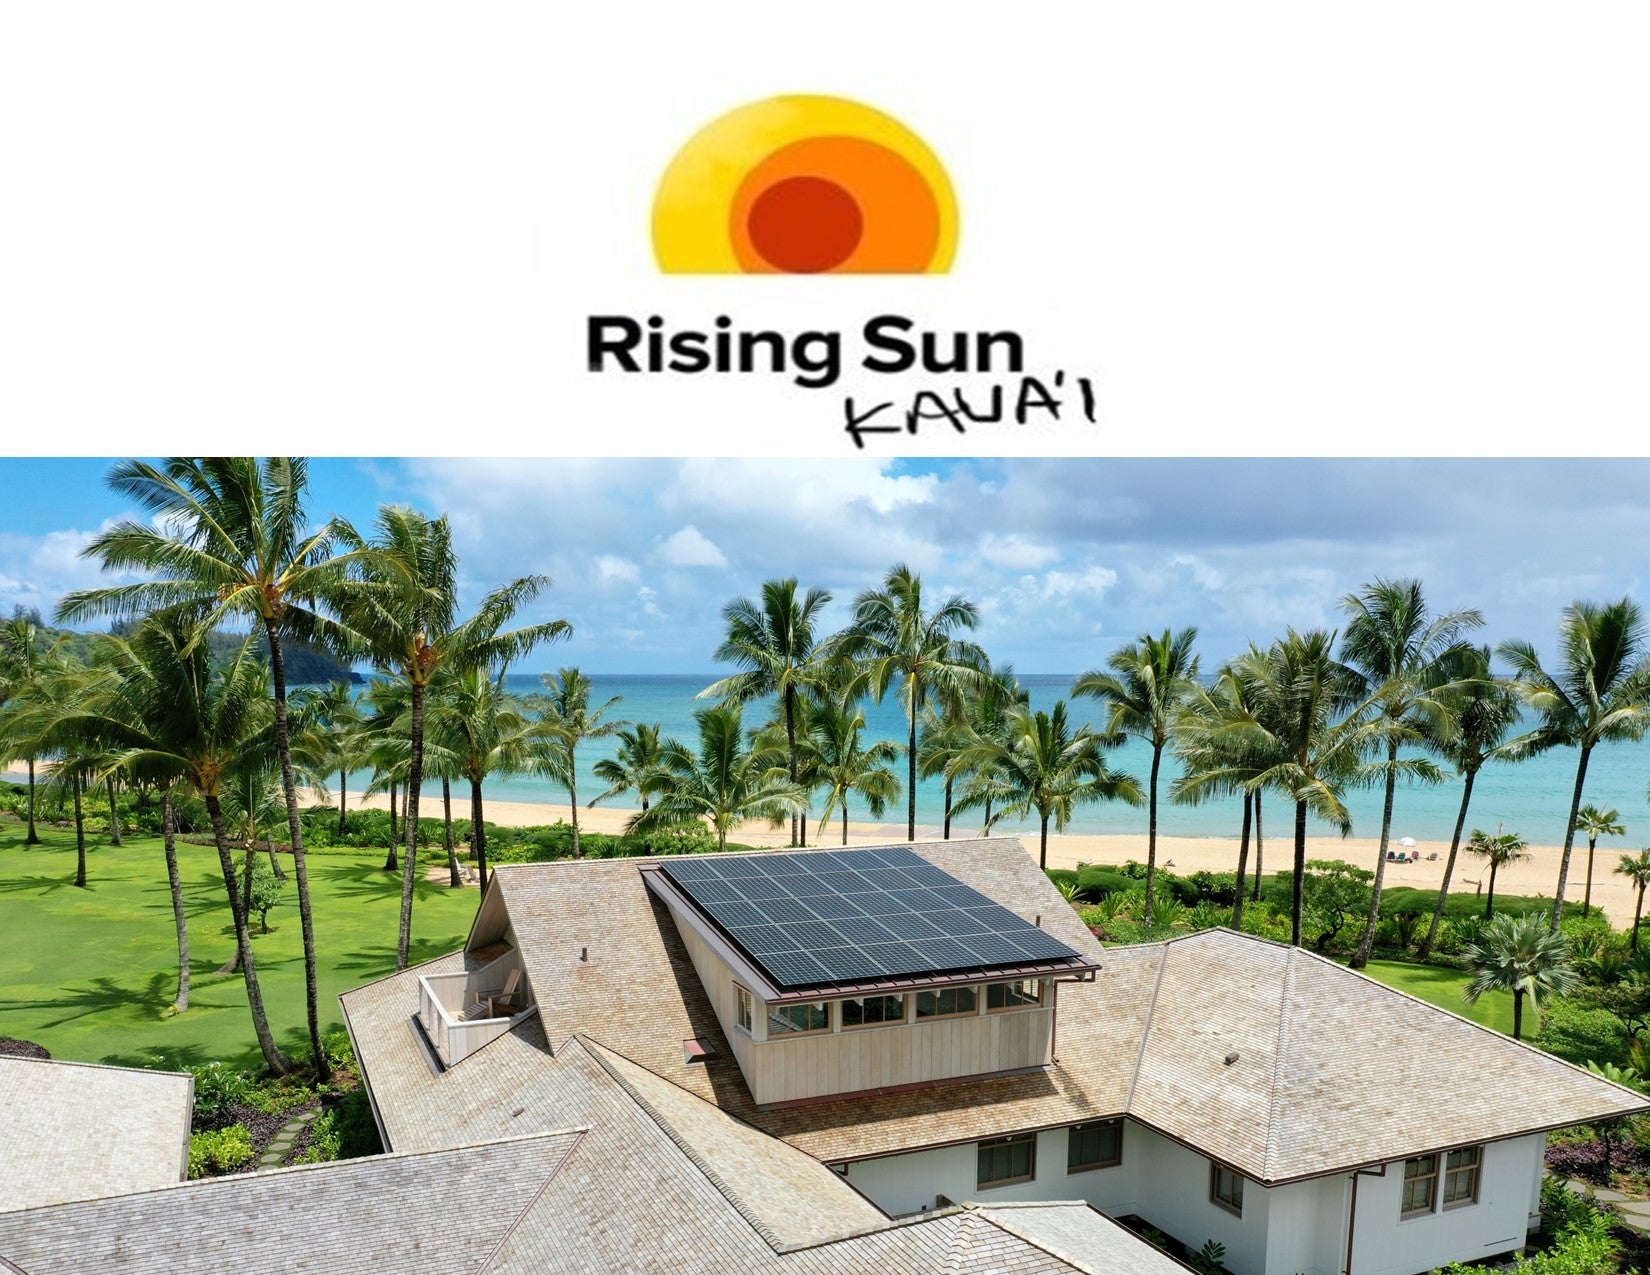 rising-sun-solar-kauai-solar-reviews-complaints-address-solar